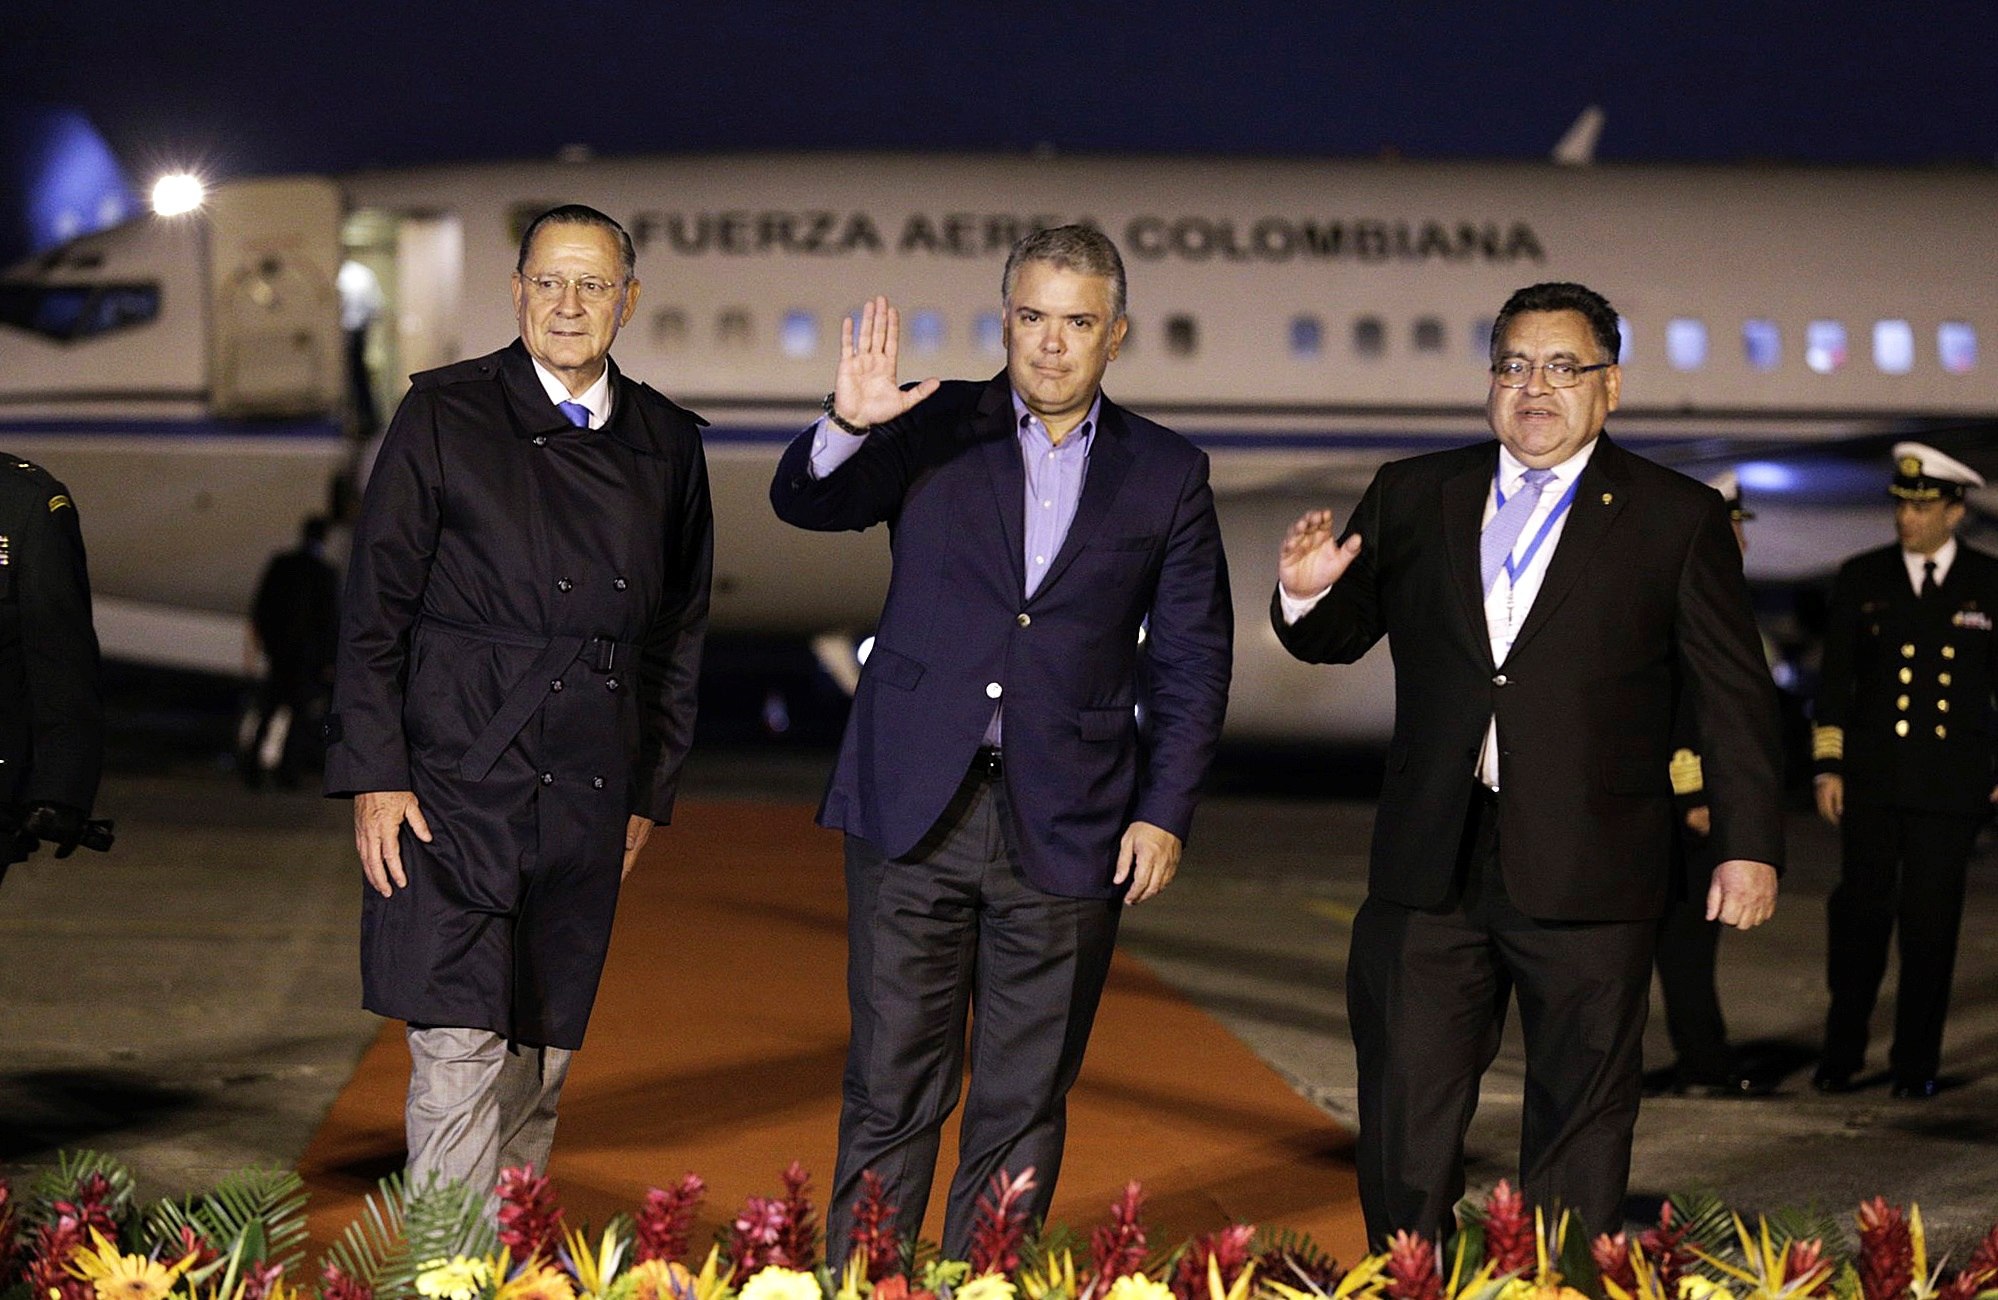 El presidente de Colombia, Iván Duque llegó en el avión presidencial para la investidura Alejandro Giammattei como presidente de Guatemala. (Foto Prensa Libre: EFE)